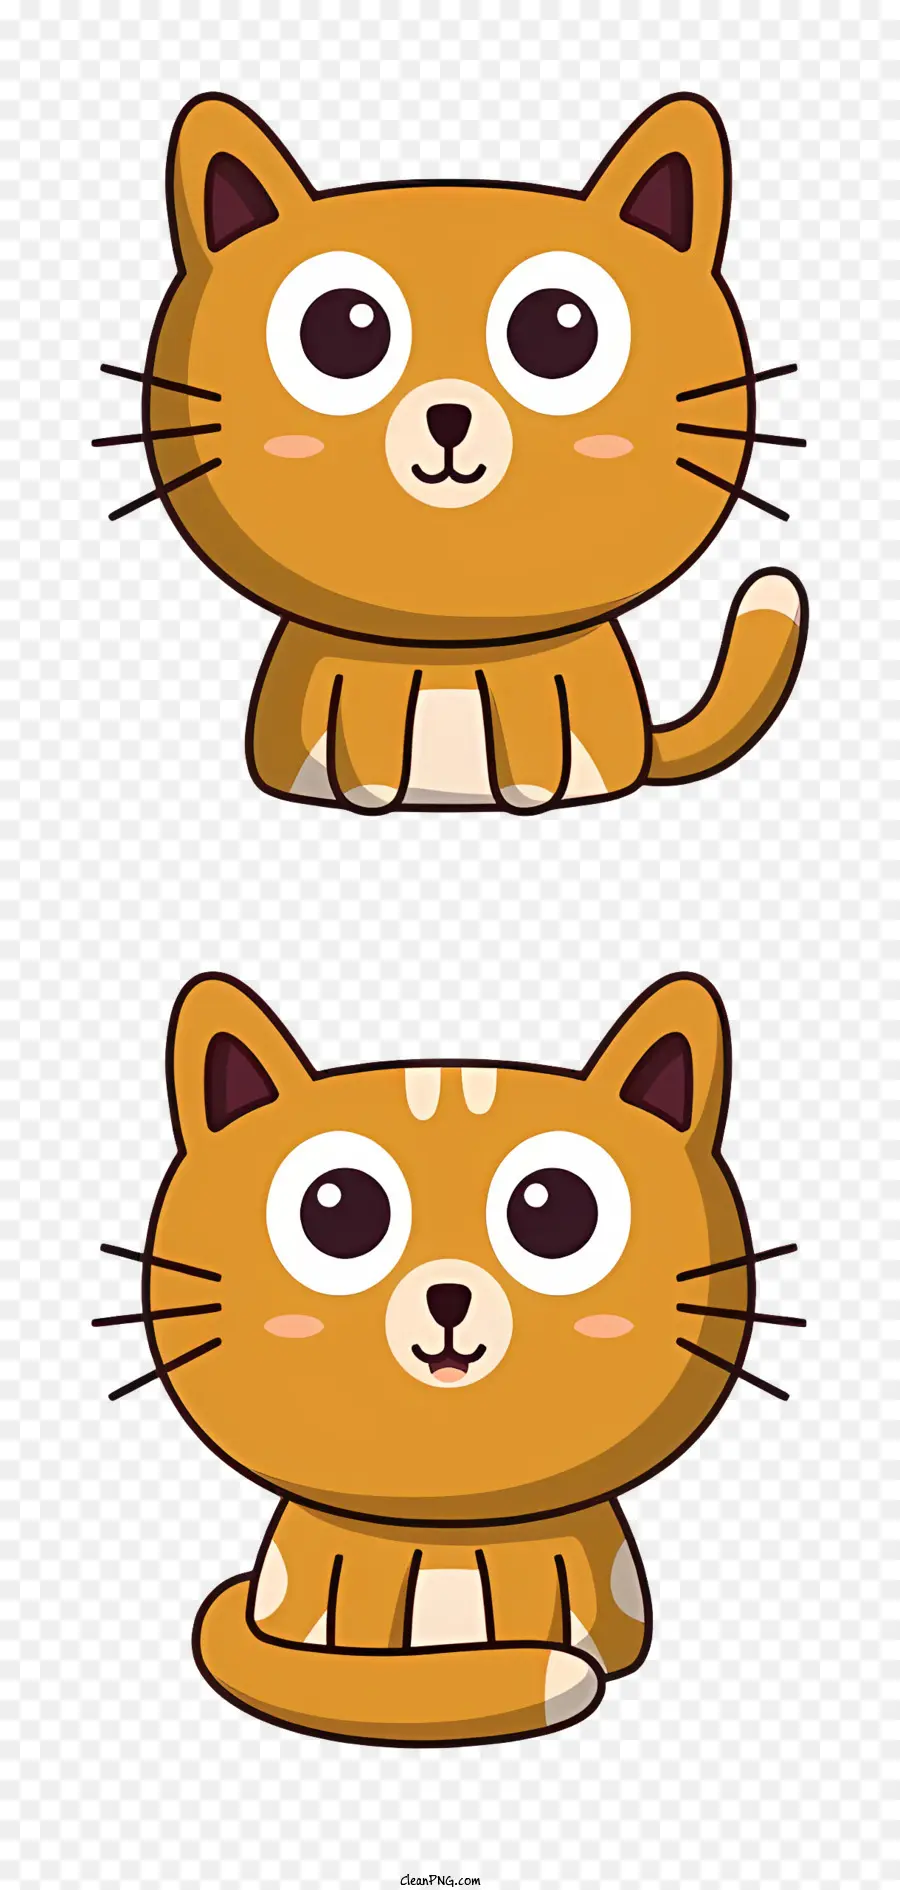 cartoon Katze - Cartoonkatze mit breiten Augen, süßer Ausdruck